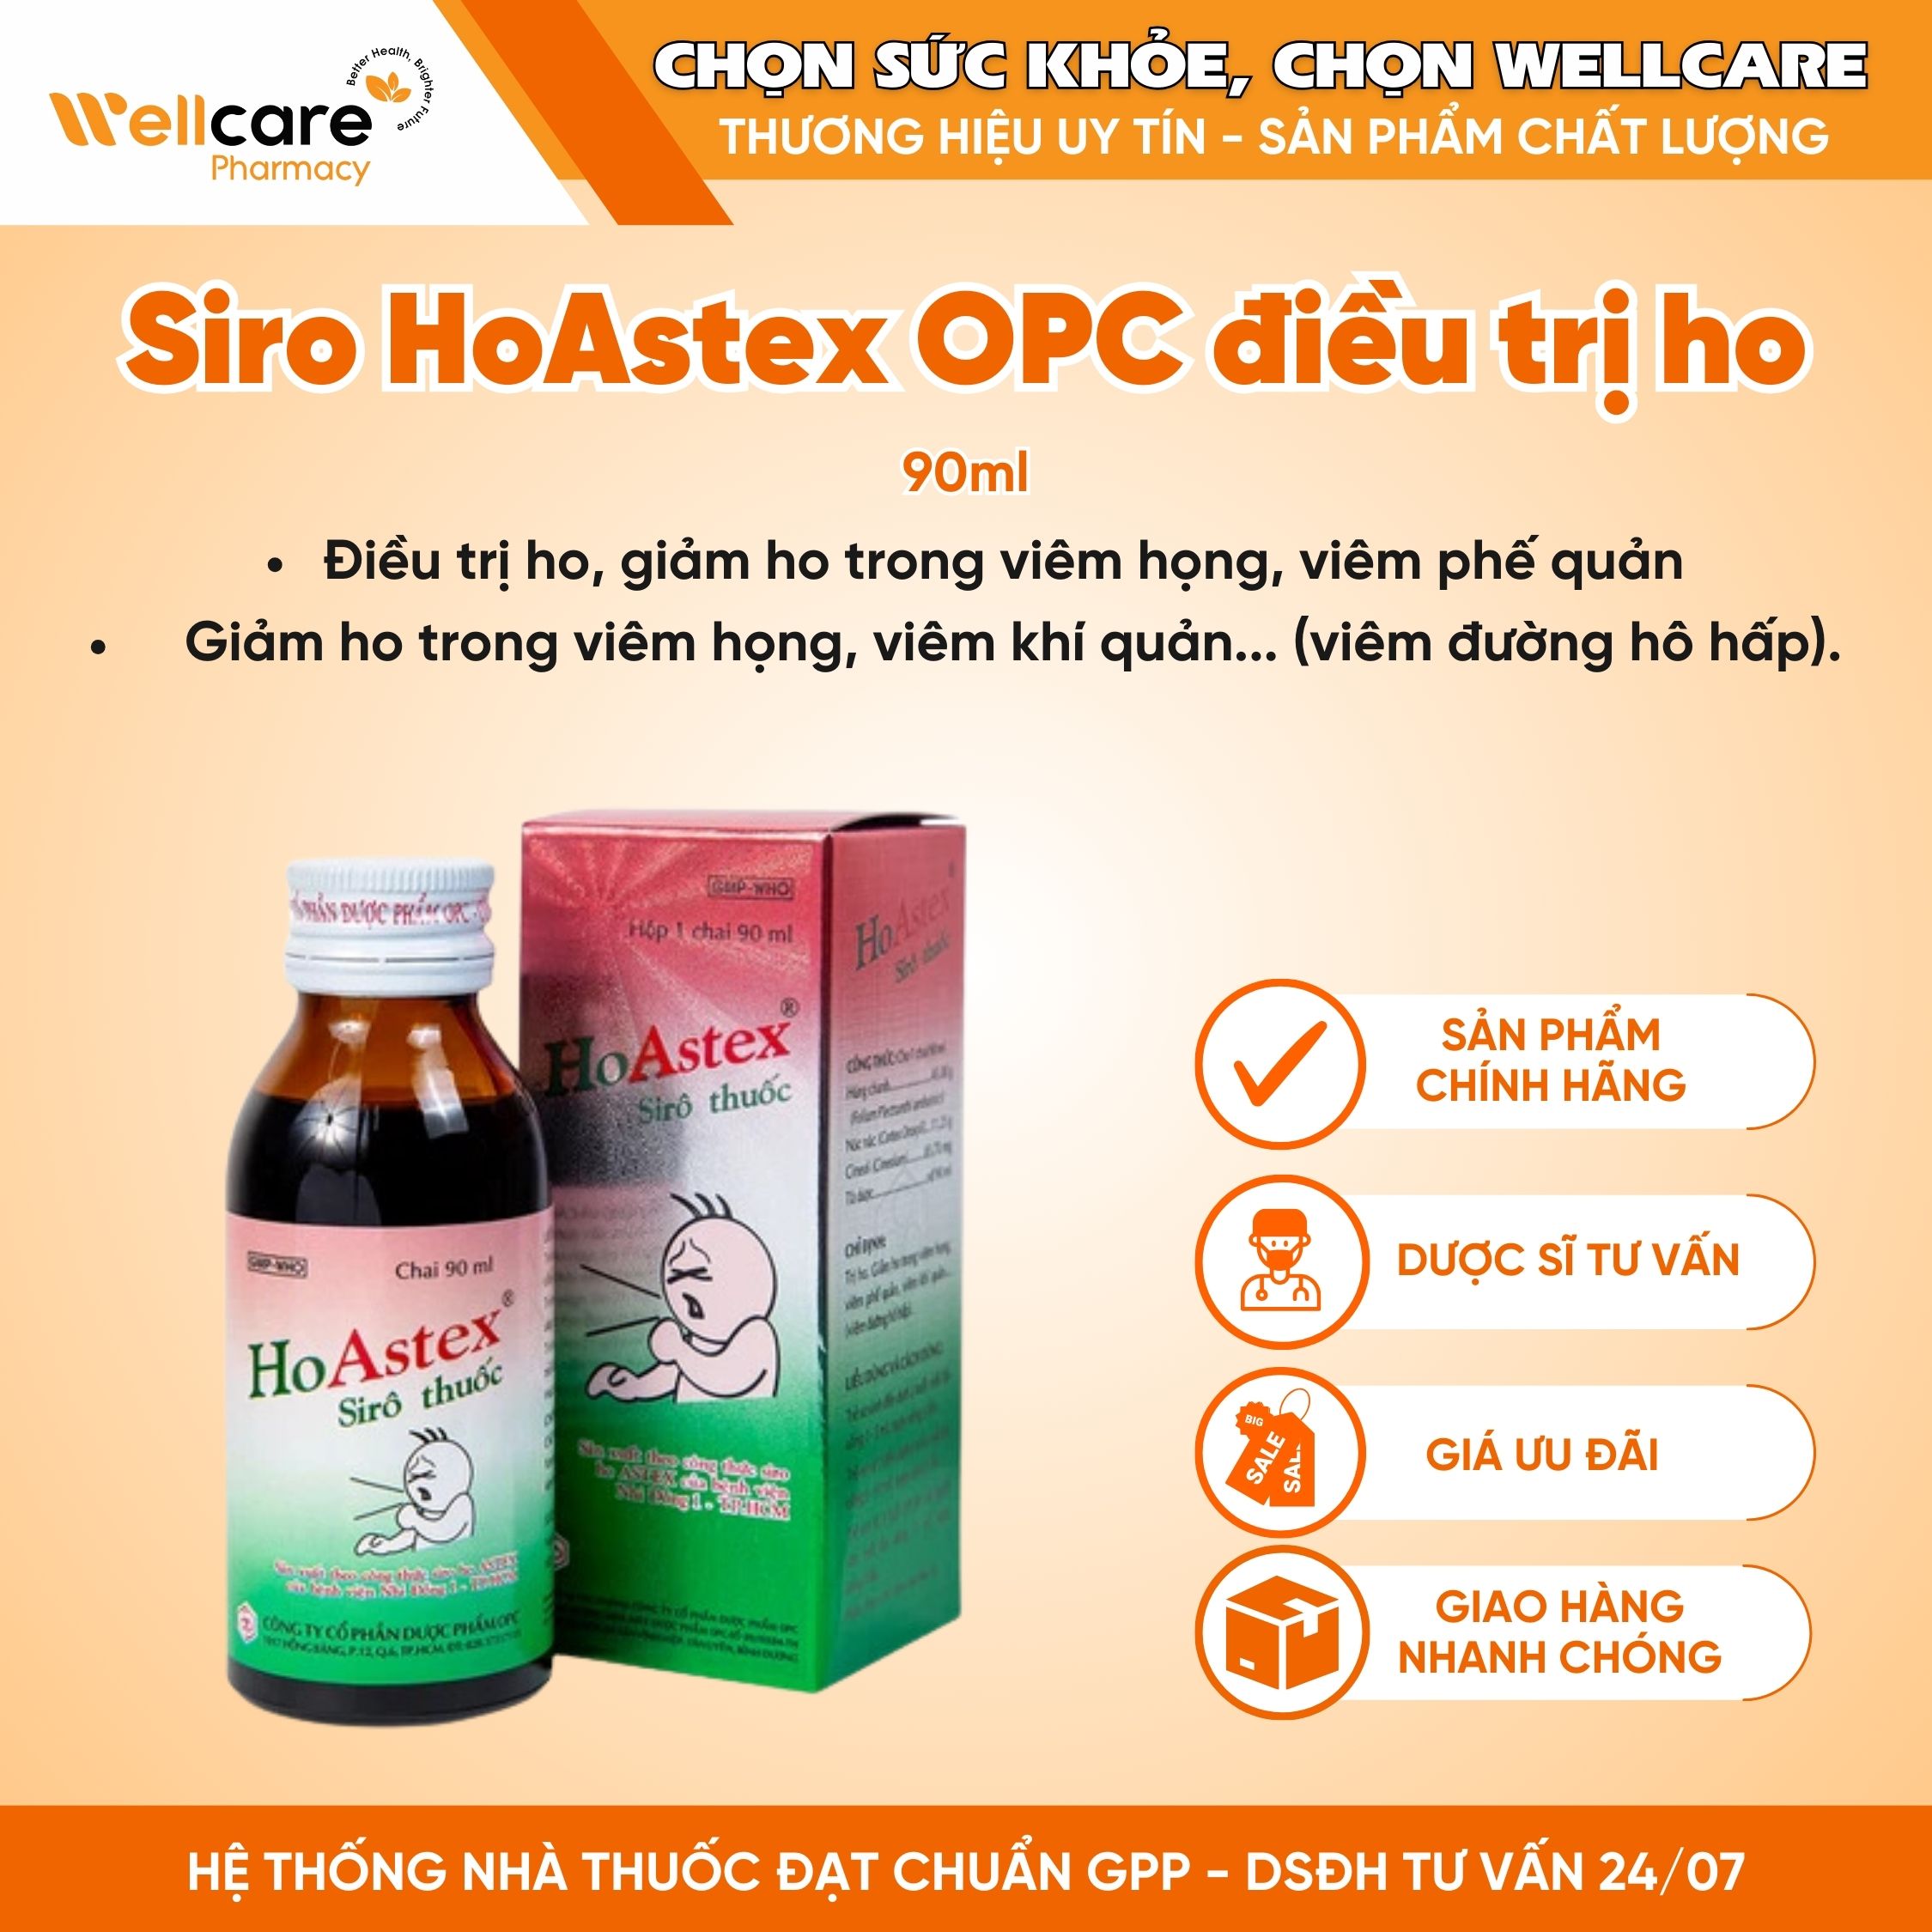 Siro thuốc HoAstex OPC – Hỗ trợ giảm ho, viêm họng, viêm phế quản (90ml)